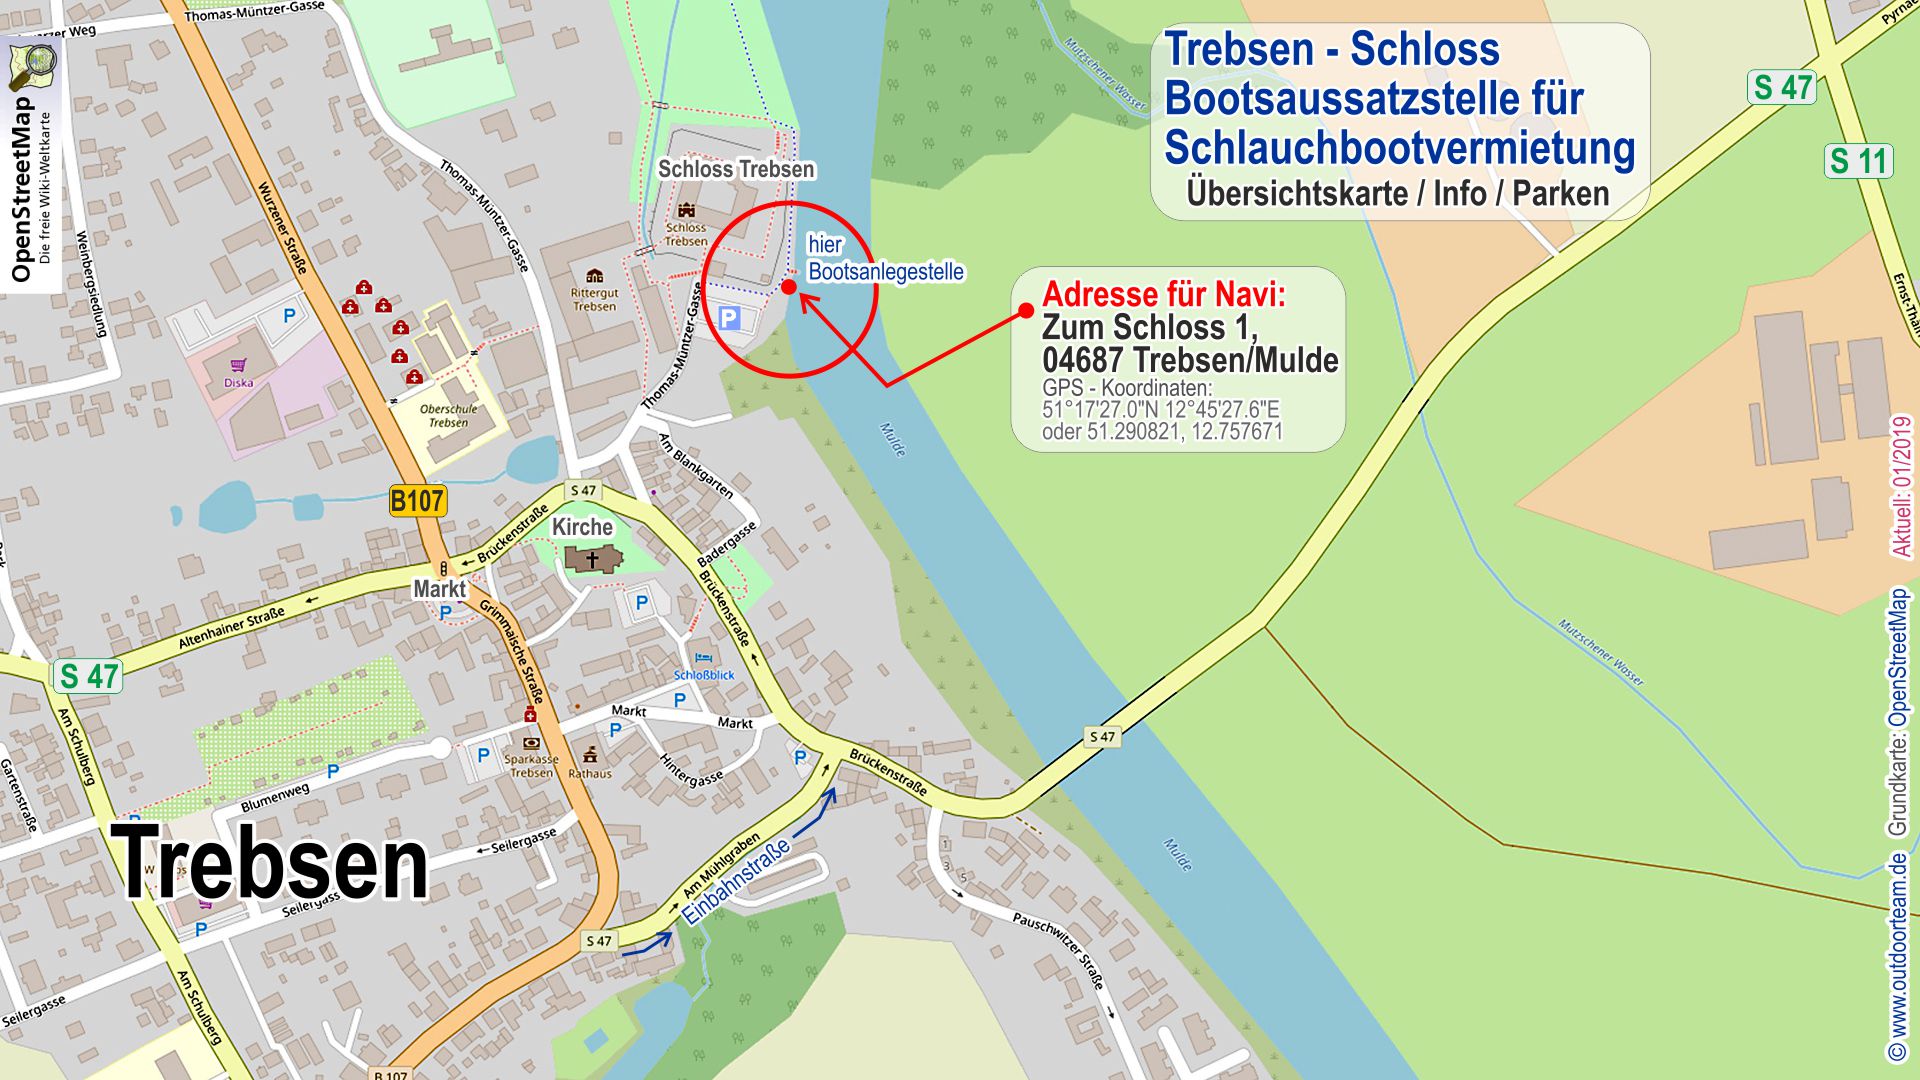 Stadtplan und Detailkarte von Trebsen - Am Parkplatz nahe der Anlegestelle am Schloss erfolgt bei Mietbooten die Bootsabholung.